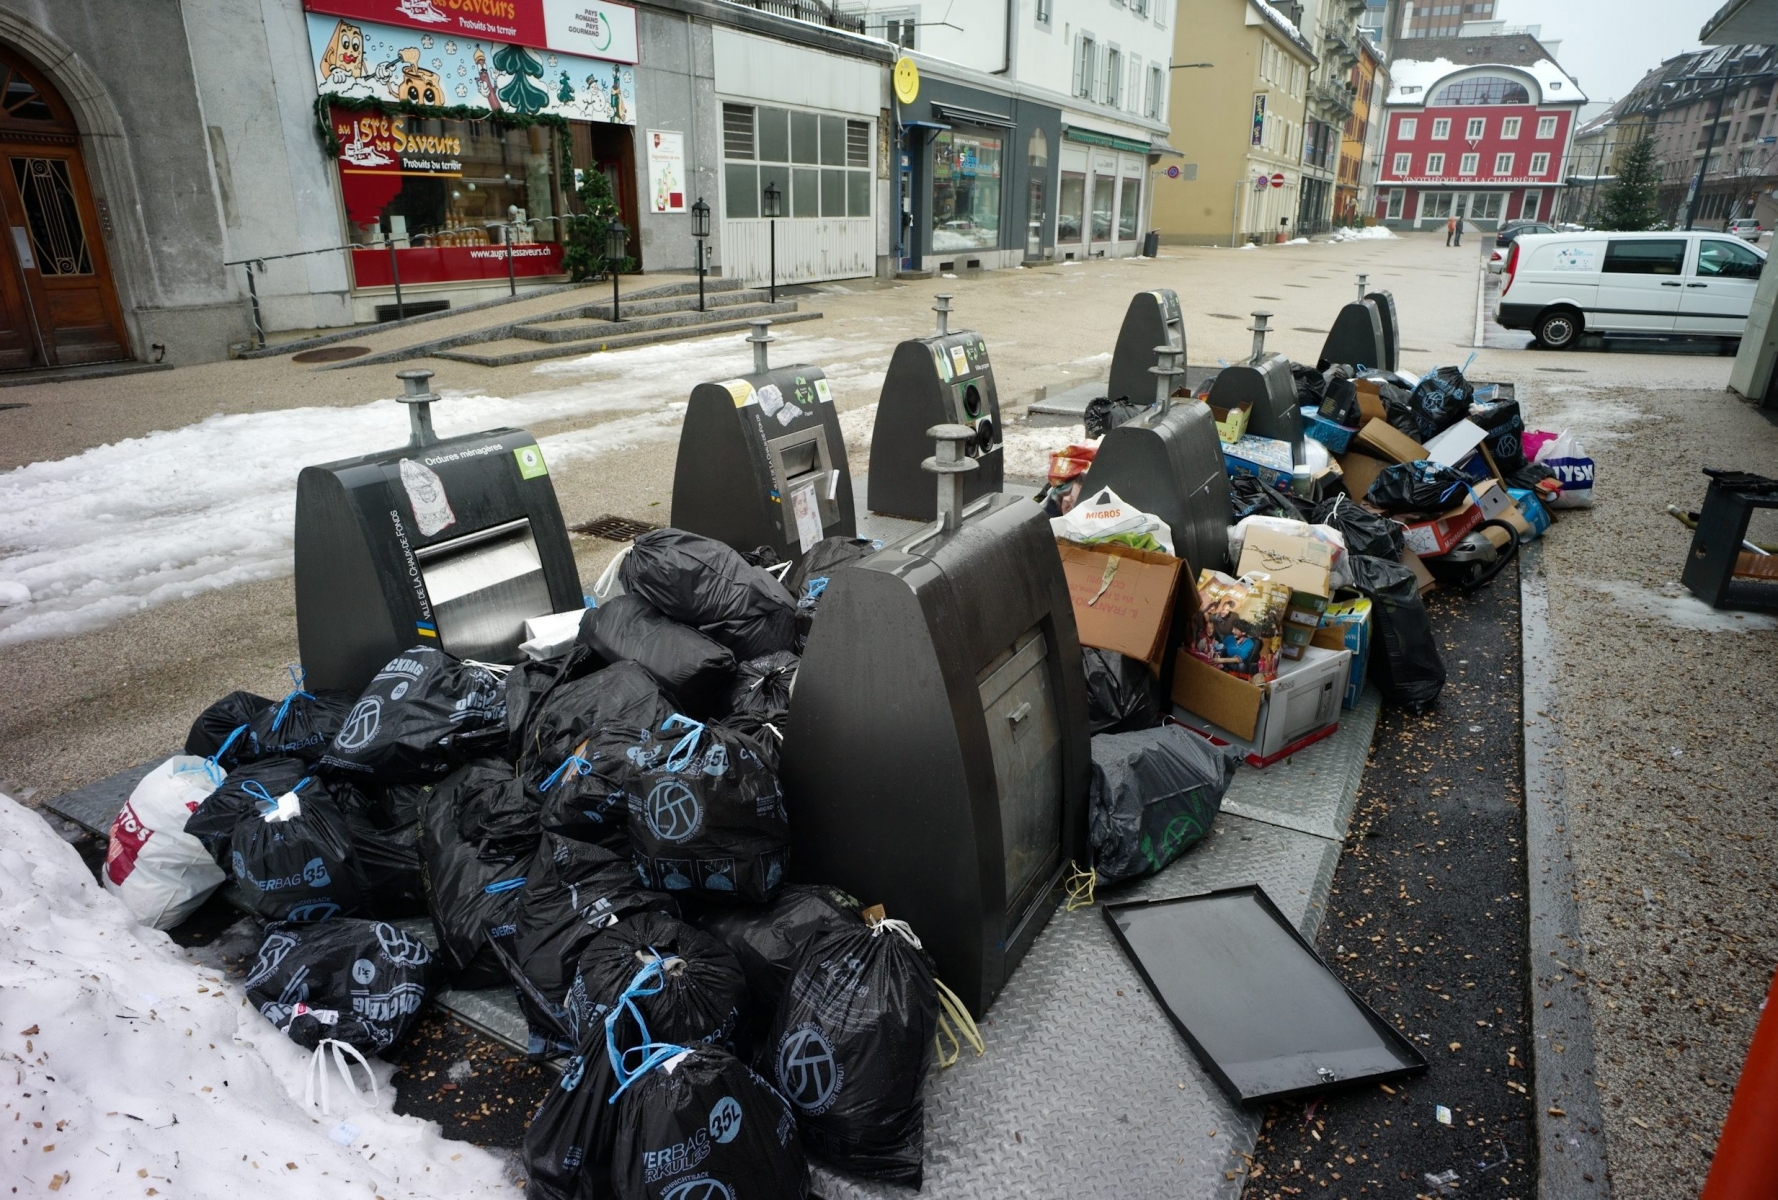 Place du Marche, amoncellement de poubelles autour des molocks avant l'introduction de la taxe au sac



LA CHAUX-DE-FONDS 01 01 2012

PHOTO: Christian Galley LA CHAUX-DE-FONDS